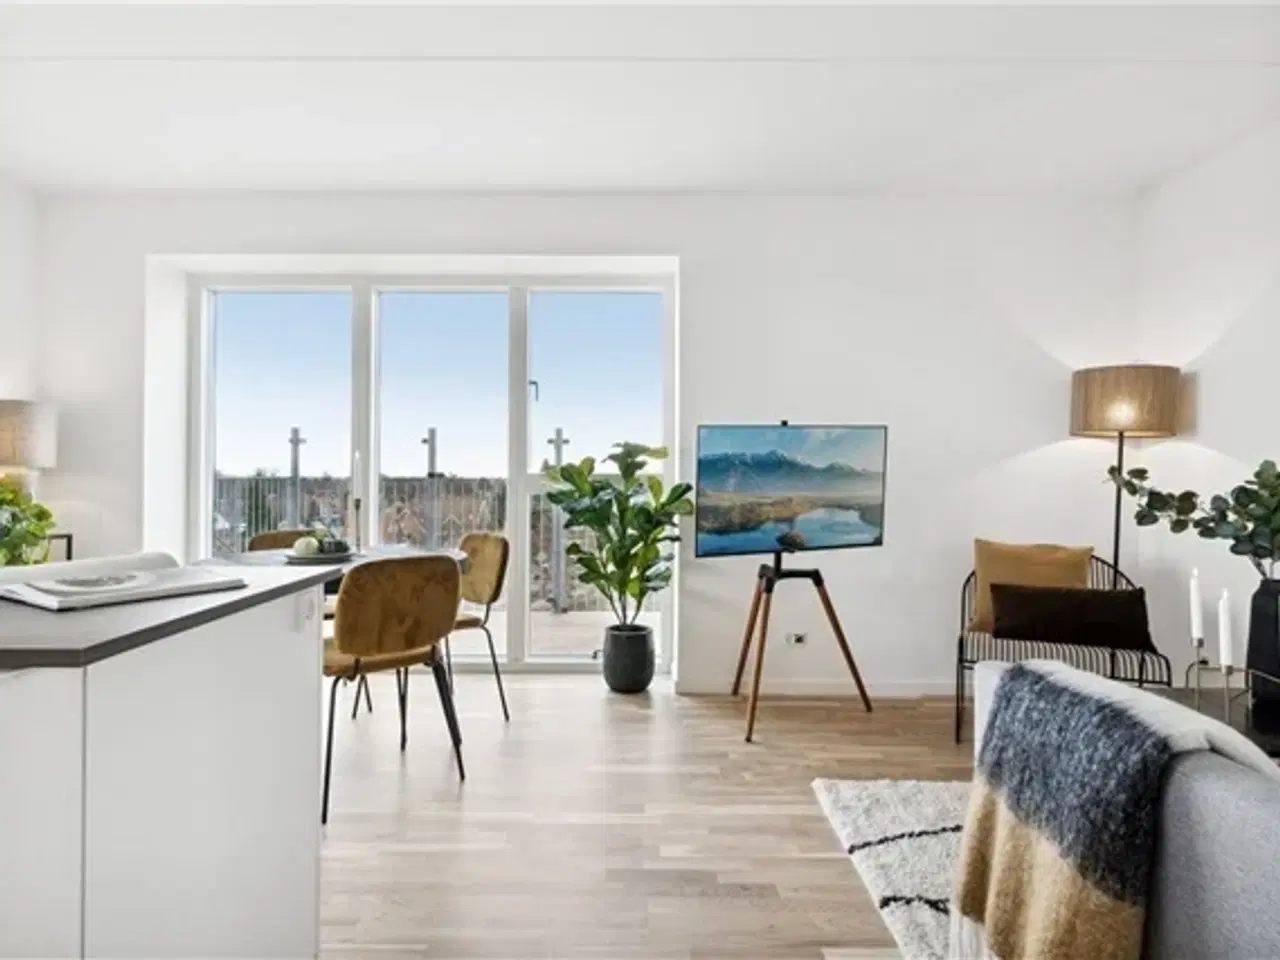 Billede 1 - 86 m2 lejlighed med altan/terrasse, Glostrup, København